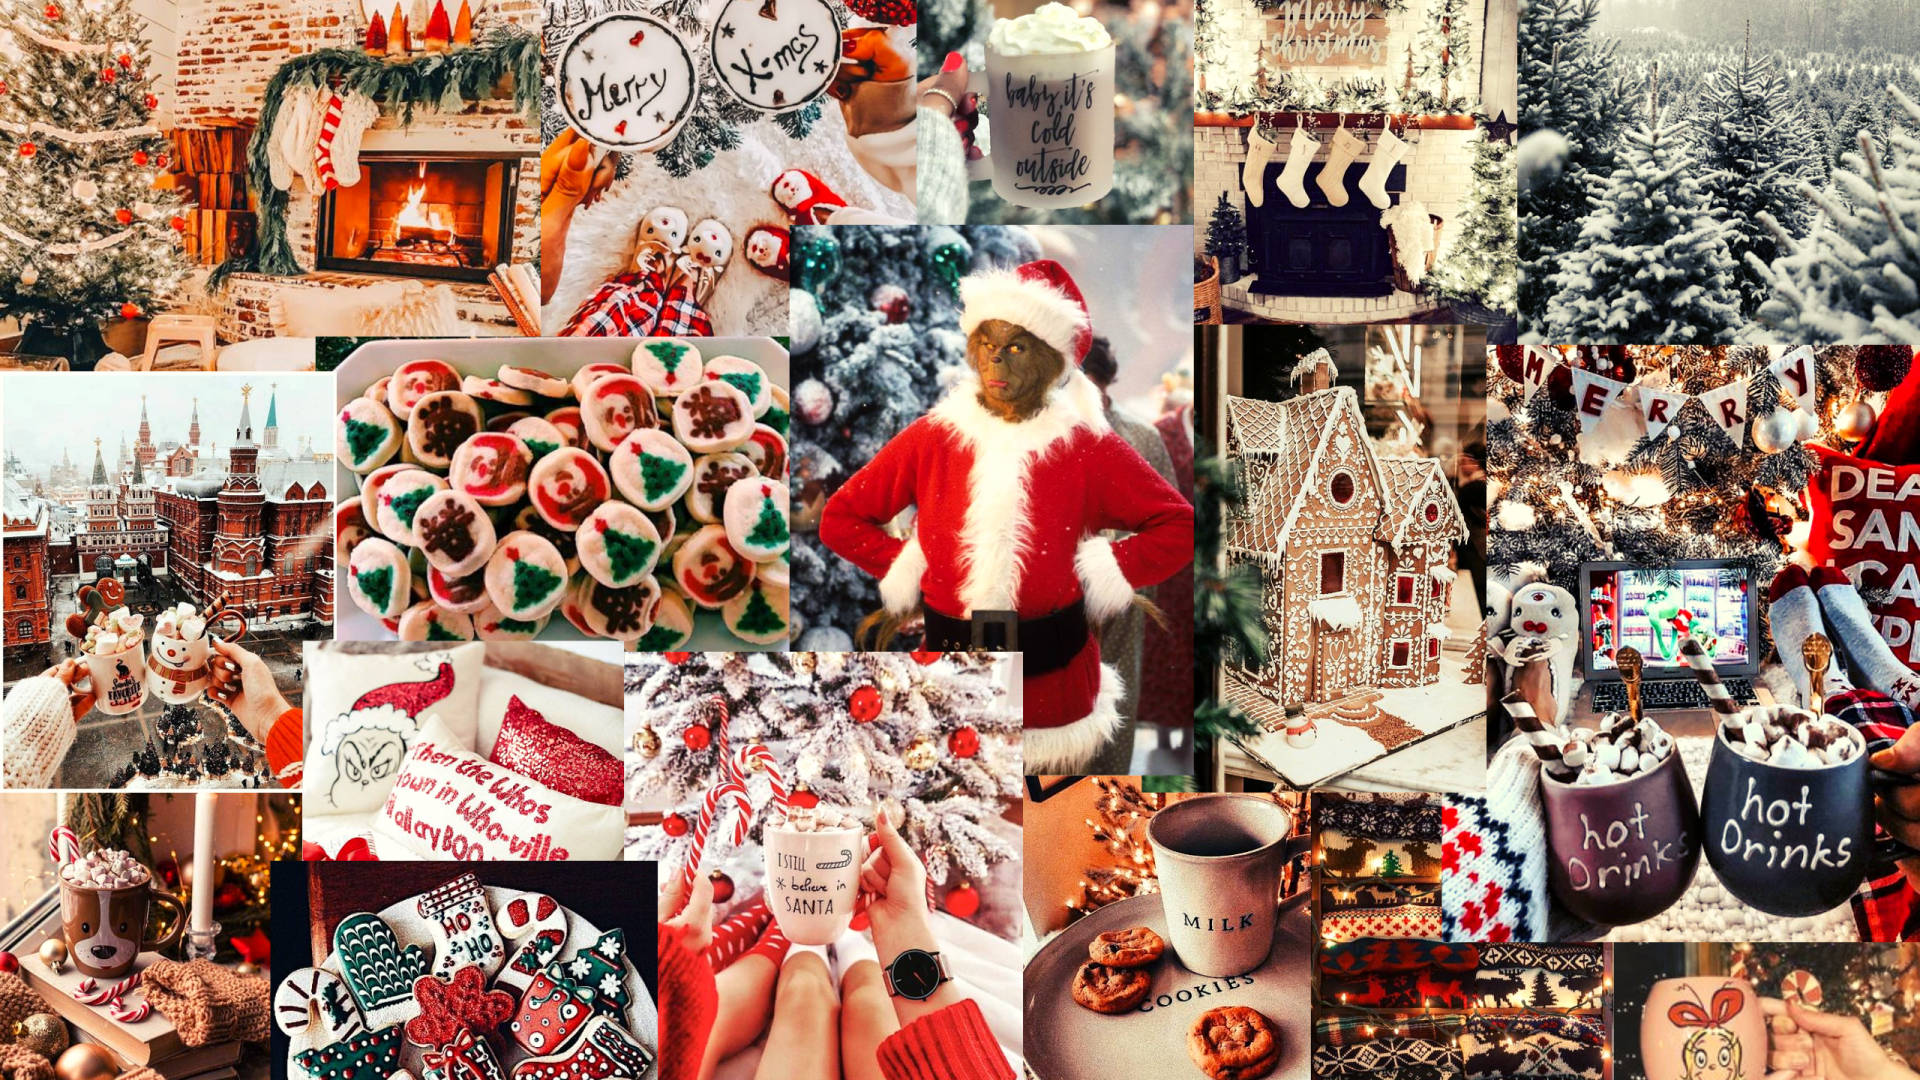 [100+] Fondos de fotos de Collage de Navidad | Wallpapers.com